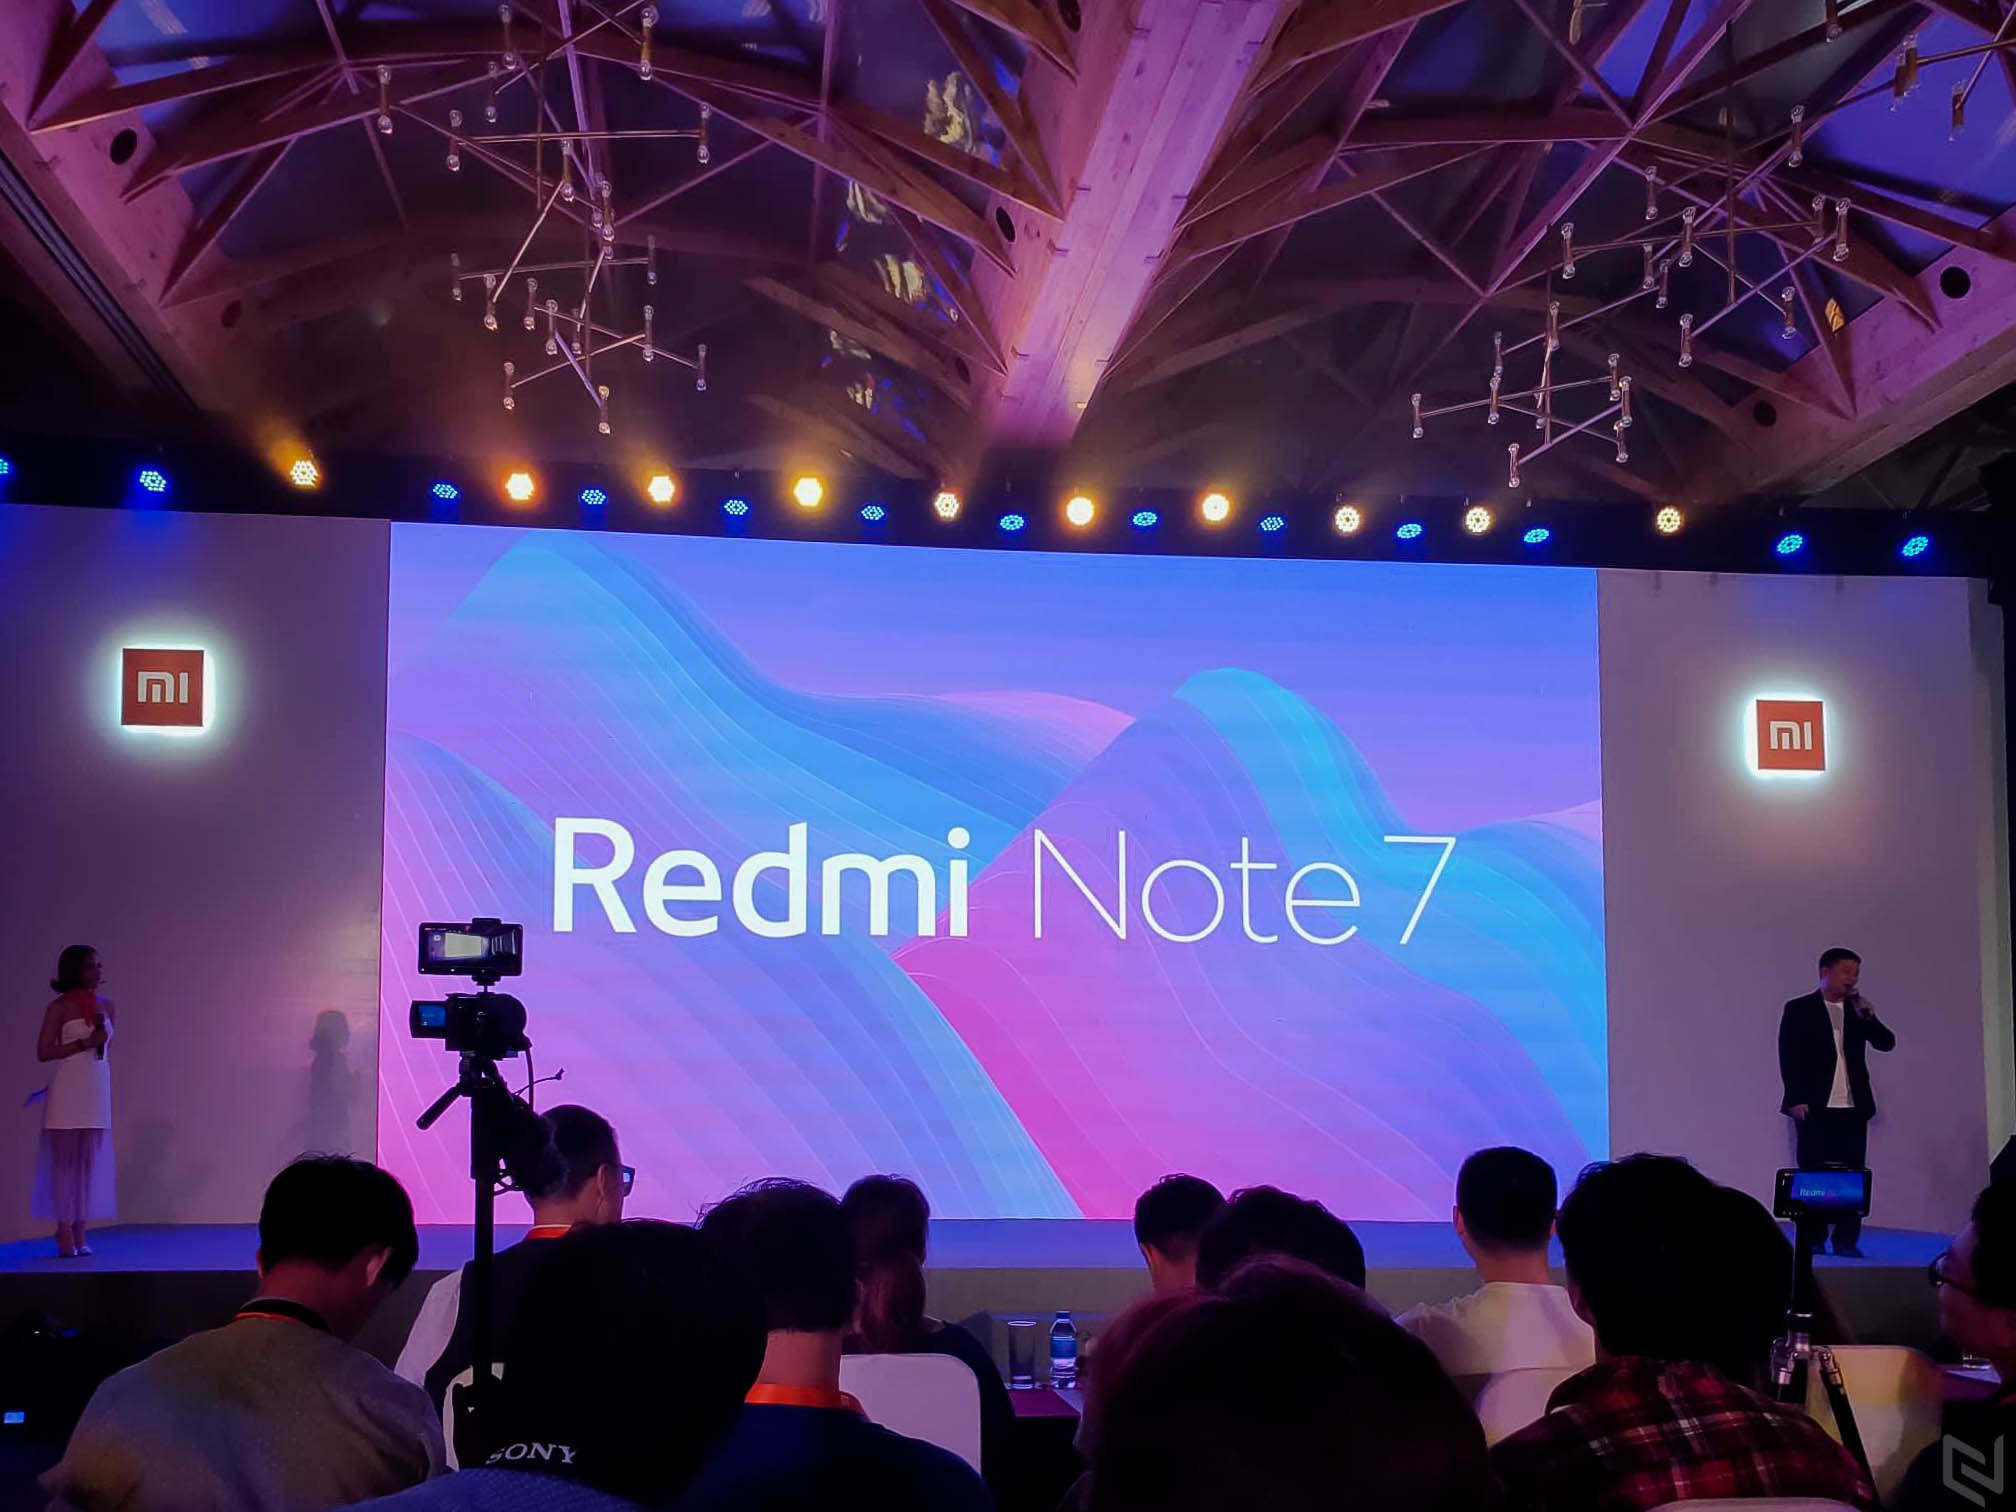 Xiaomi Redmi Note 7 ra mắt thị trường Việt, camera 48MP, màn hình giọt mưa, giá từ 3,990,000đ, mở bán ngày 28/3